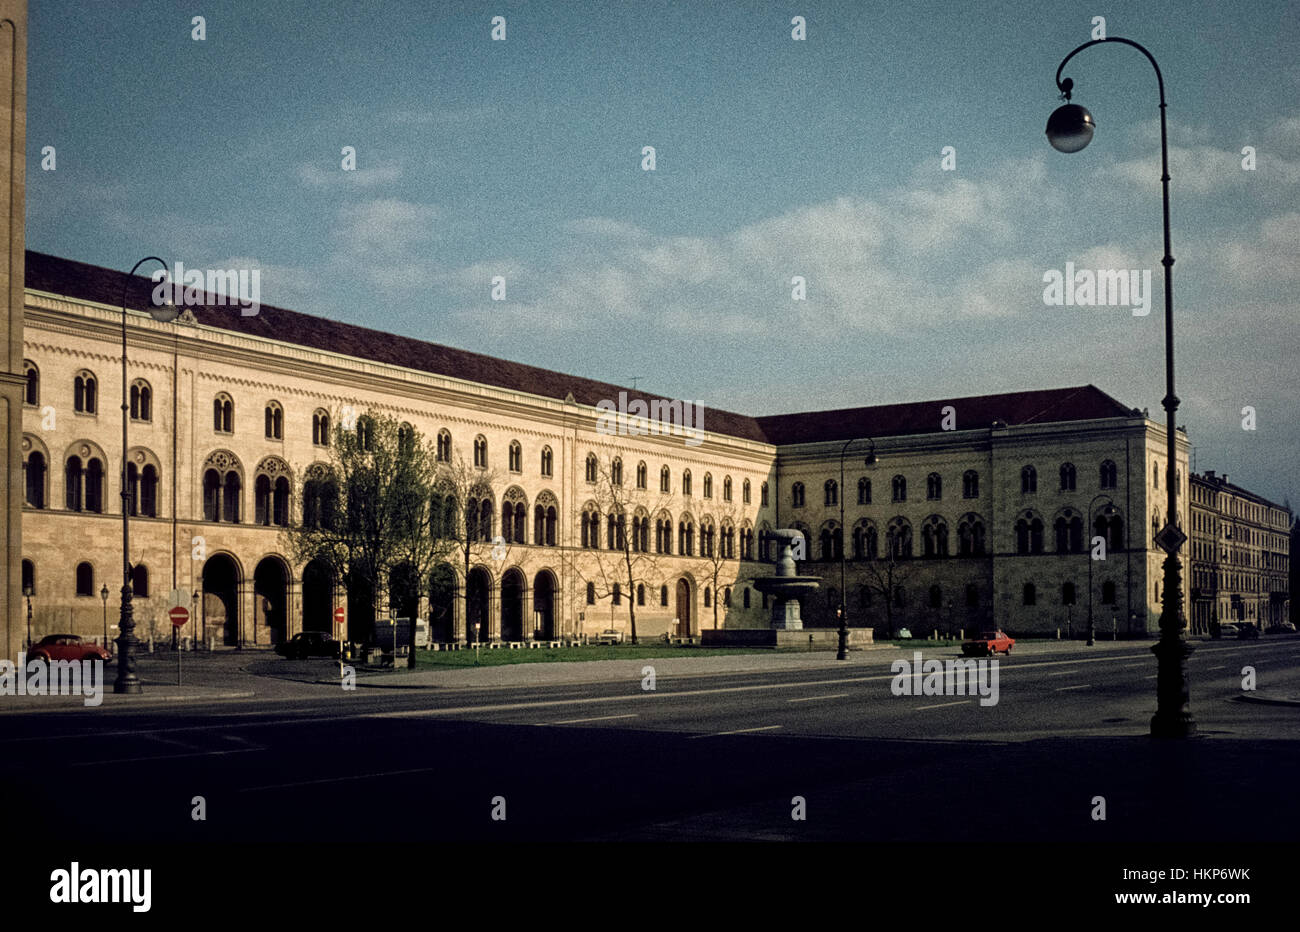 L'università di Monaco di Baviera nel 1974. Hauptgebäude der Münchner LMU am Geschwister-Scholl-Platz un einem Sonntagmorgen 1974. Foto Stock